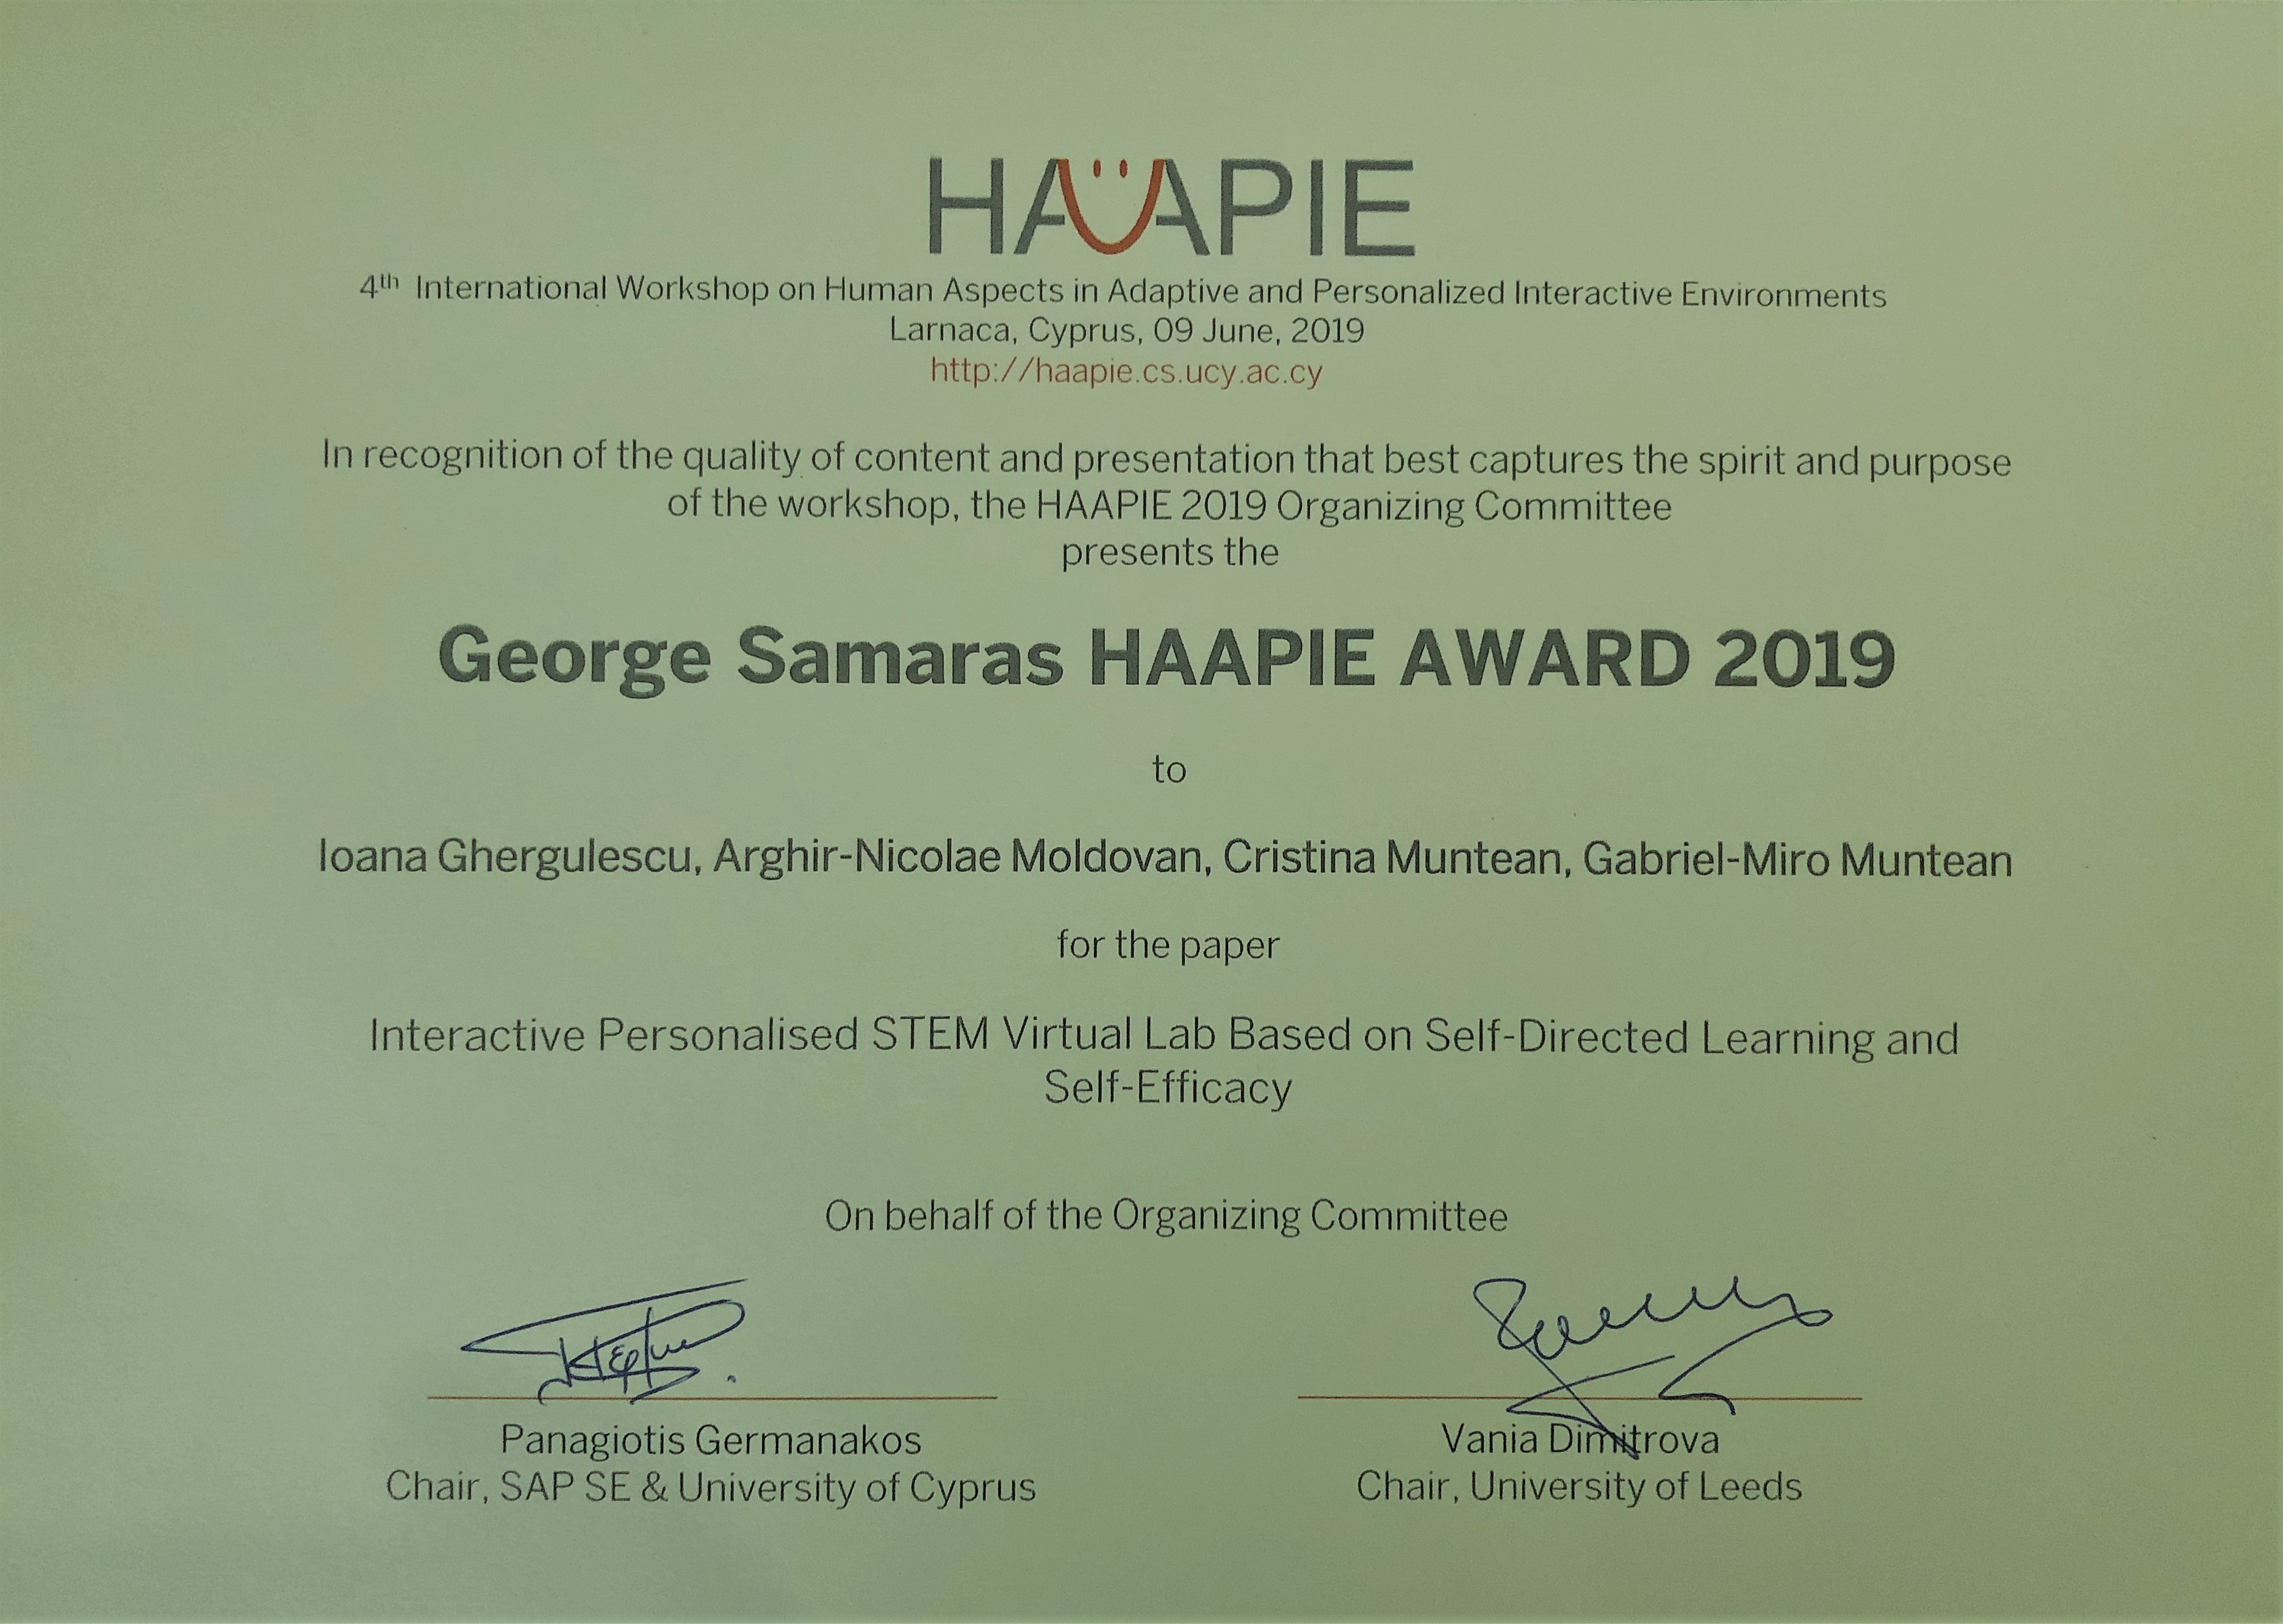 HAAPIE Award 2019